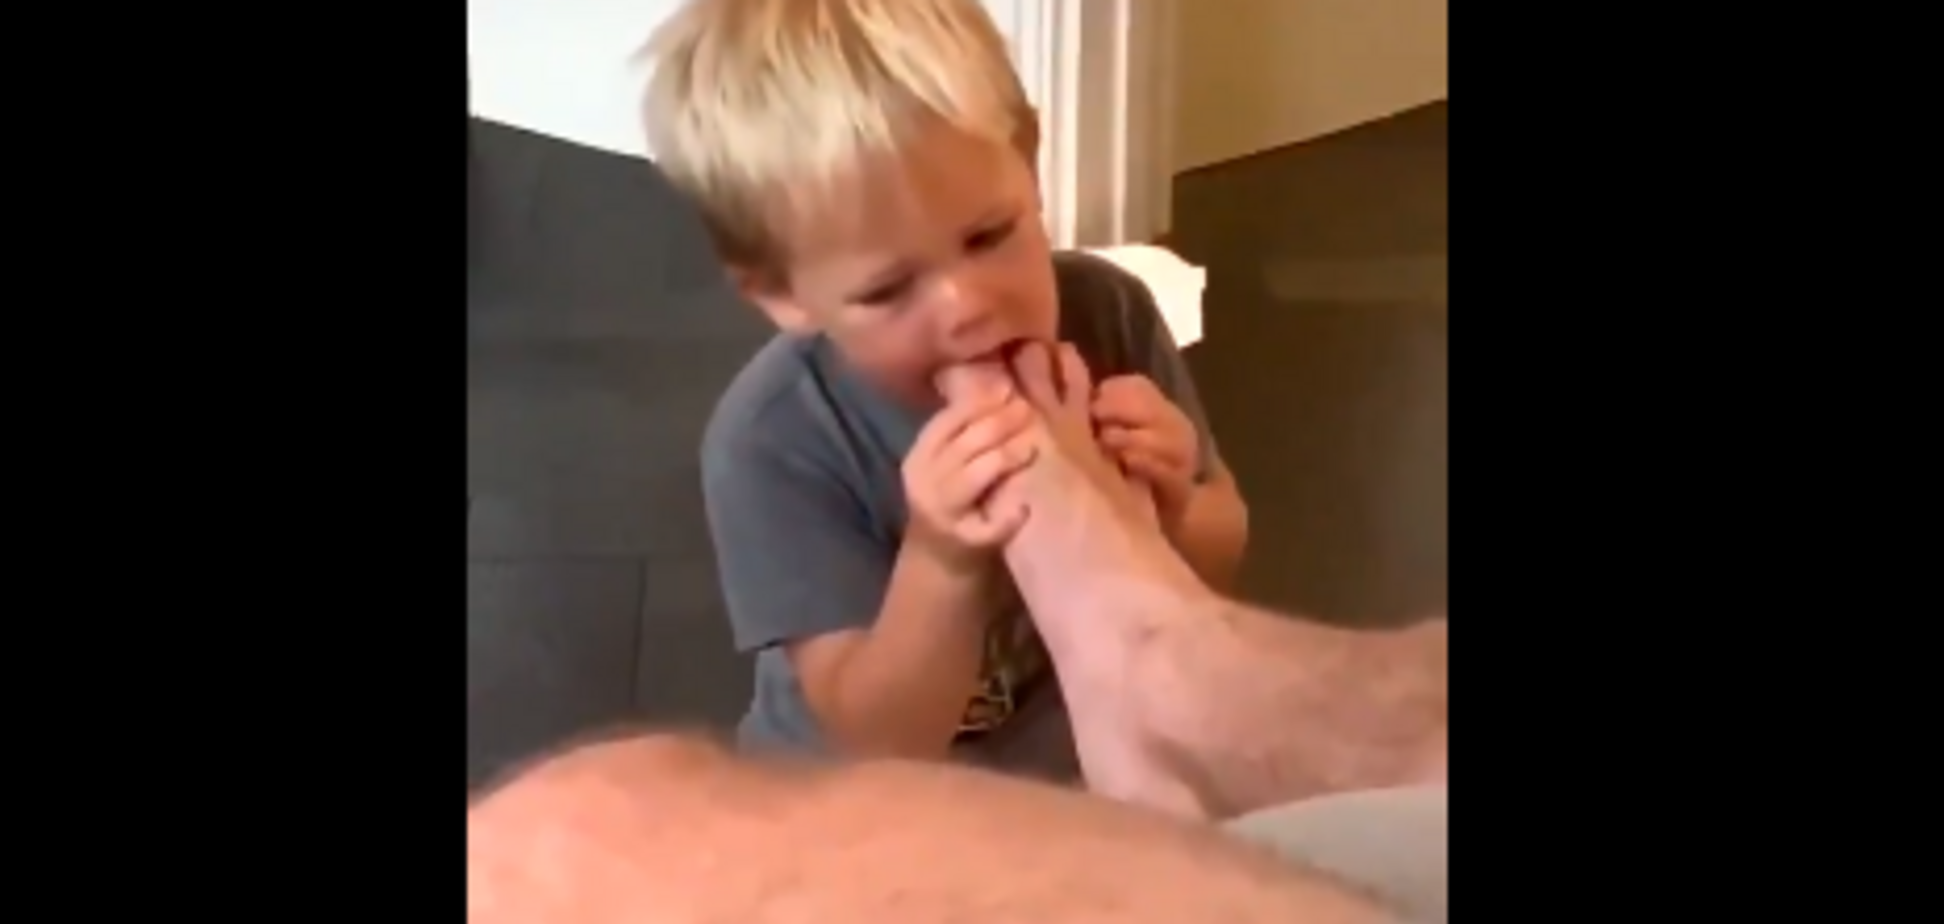 Смоктав пальці ніг: зірка Голлівуду викликав суперечки відео з сином